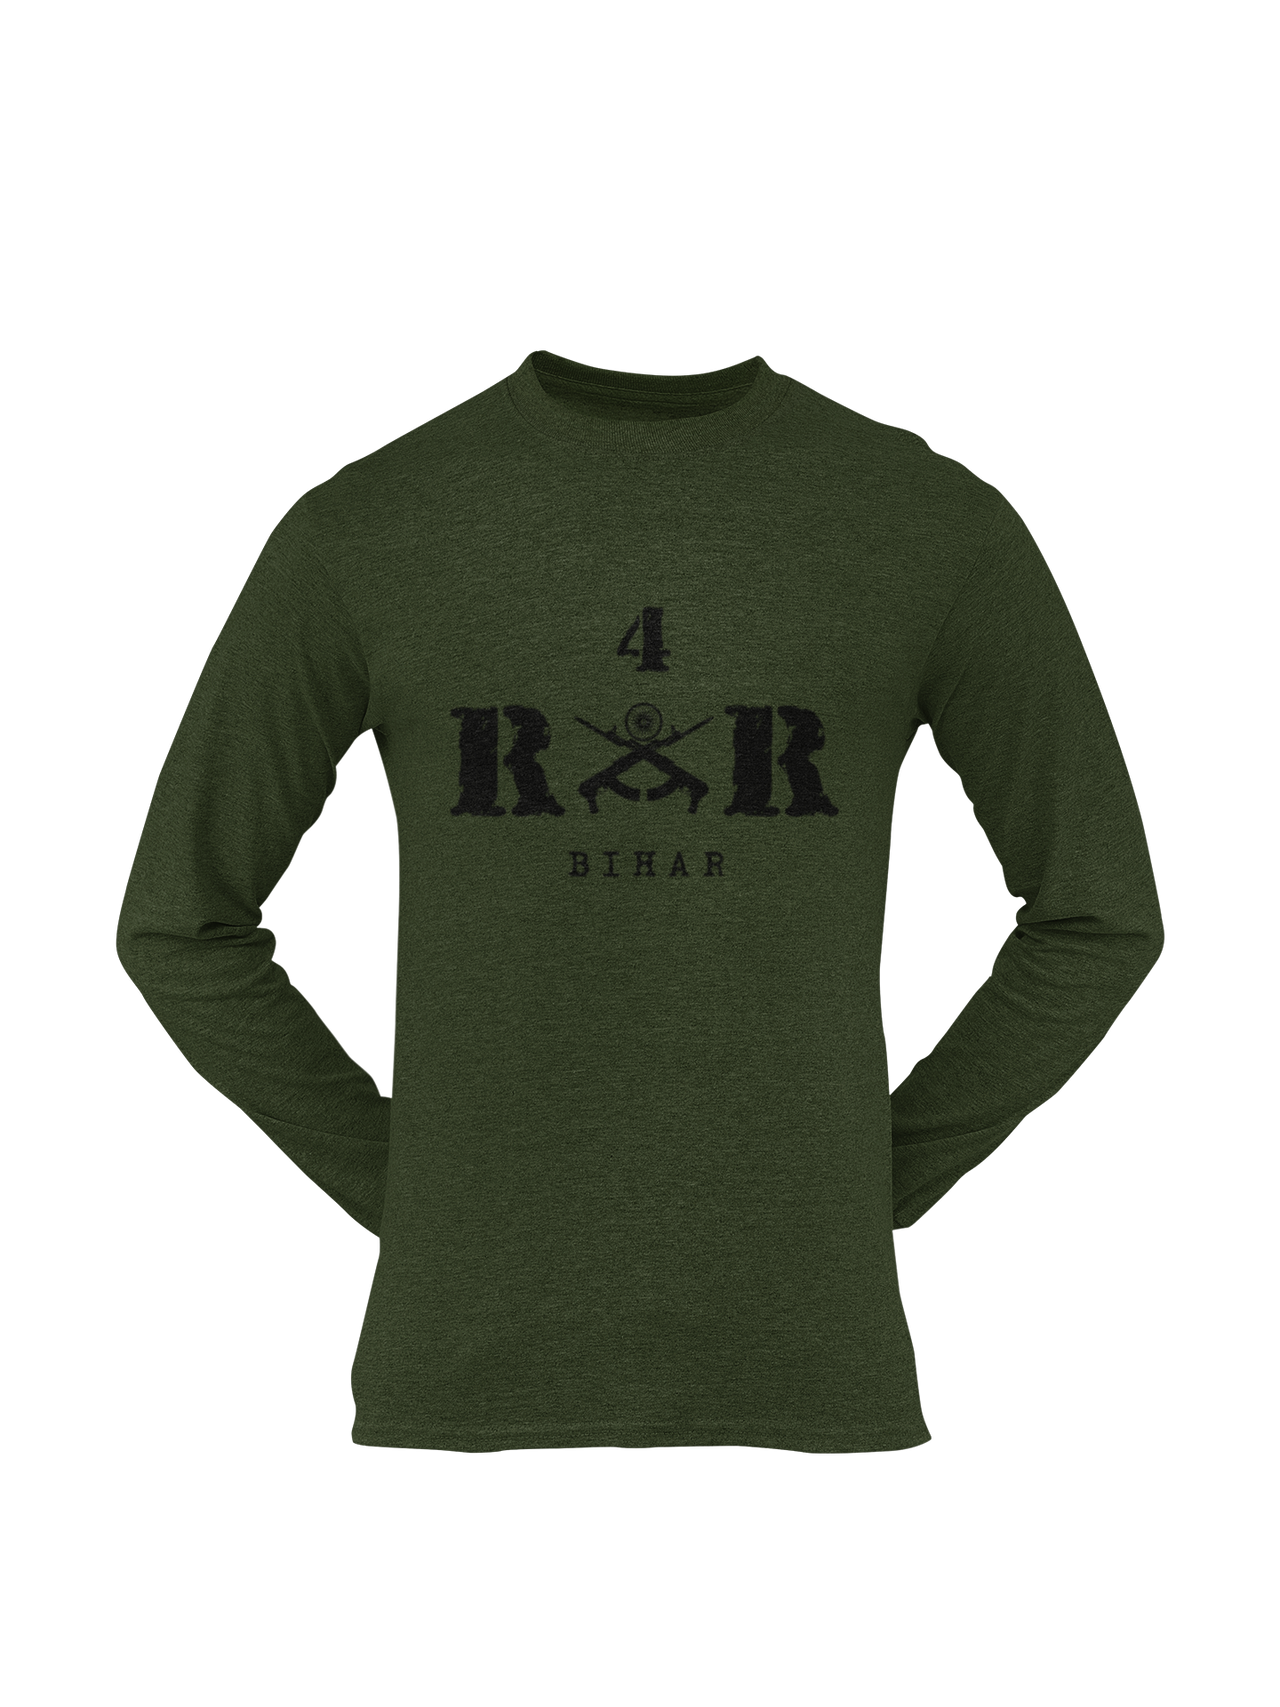 Rashtriya Rifles T-shirt - 4 RR Bihar (Men)